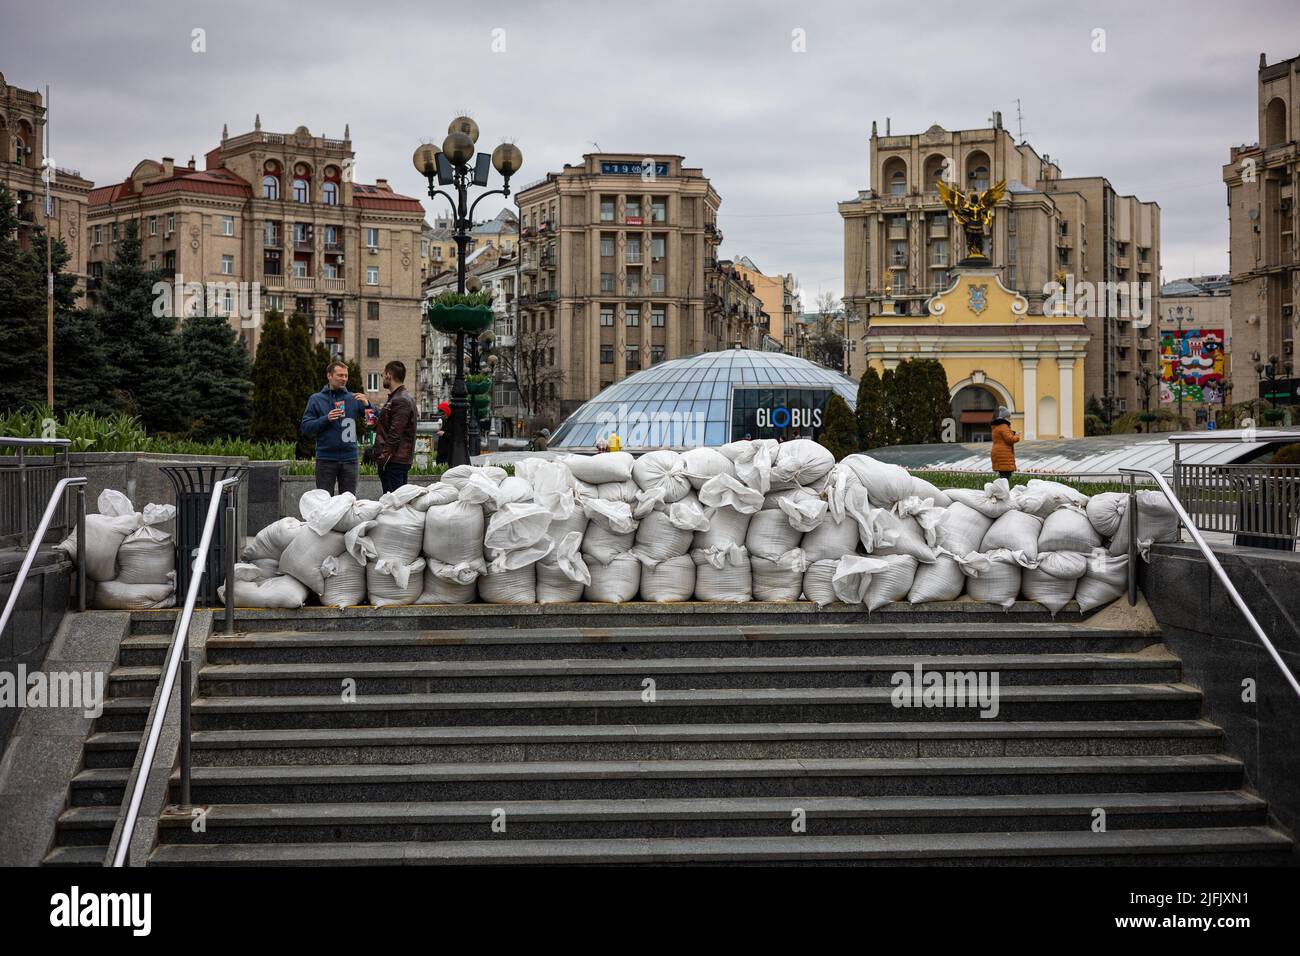 KIEV, UKRAINE - APR 20, 2022: Des barricades de sacs de sable bloquent les passages inférieurs de la place de l'indépendance en cas d'attaque par les troupes russes ennemies. Banque D'Images